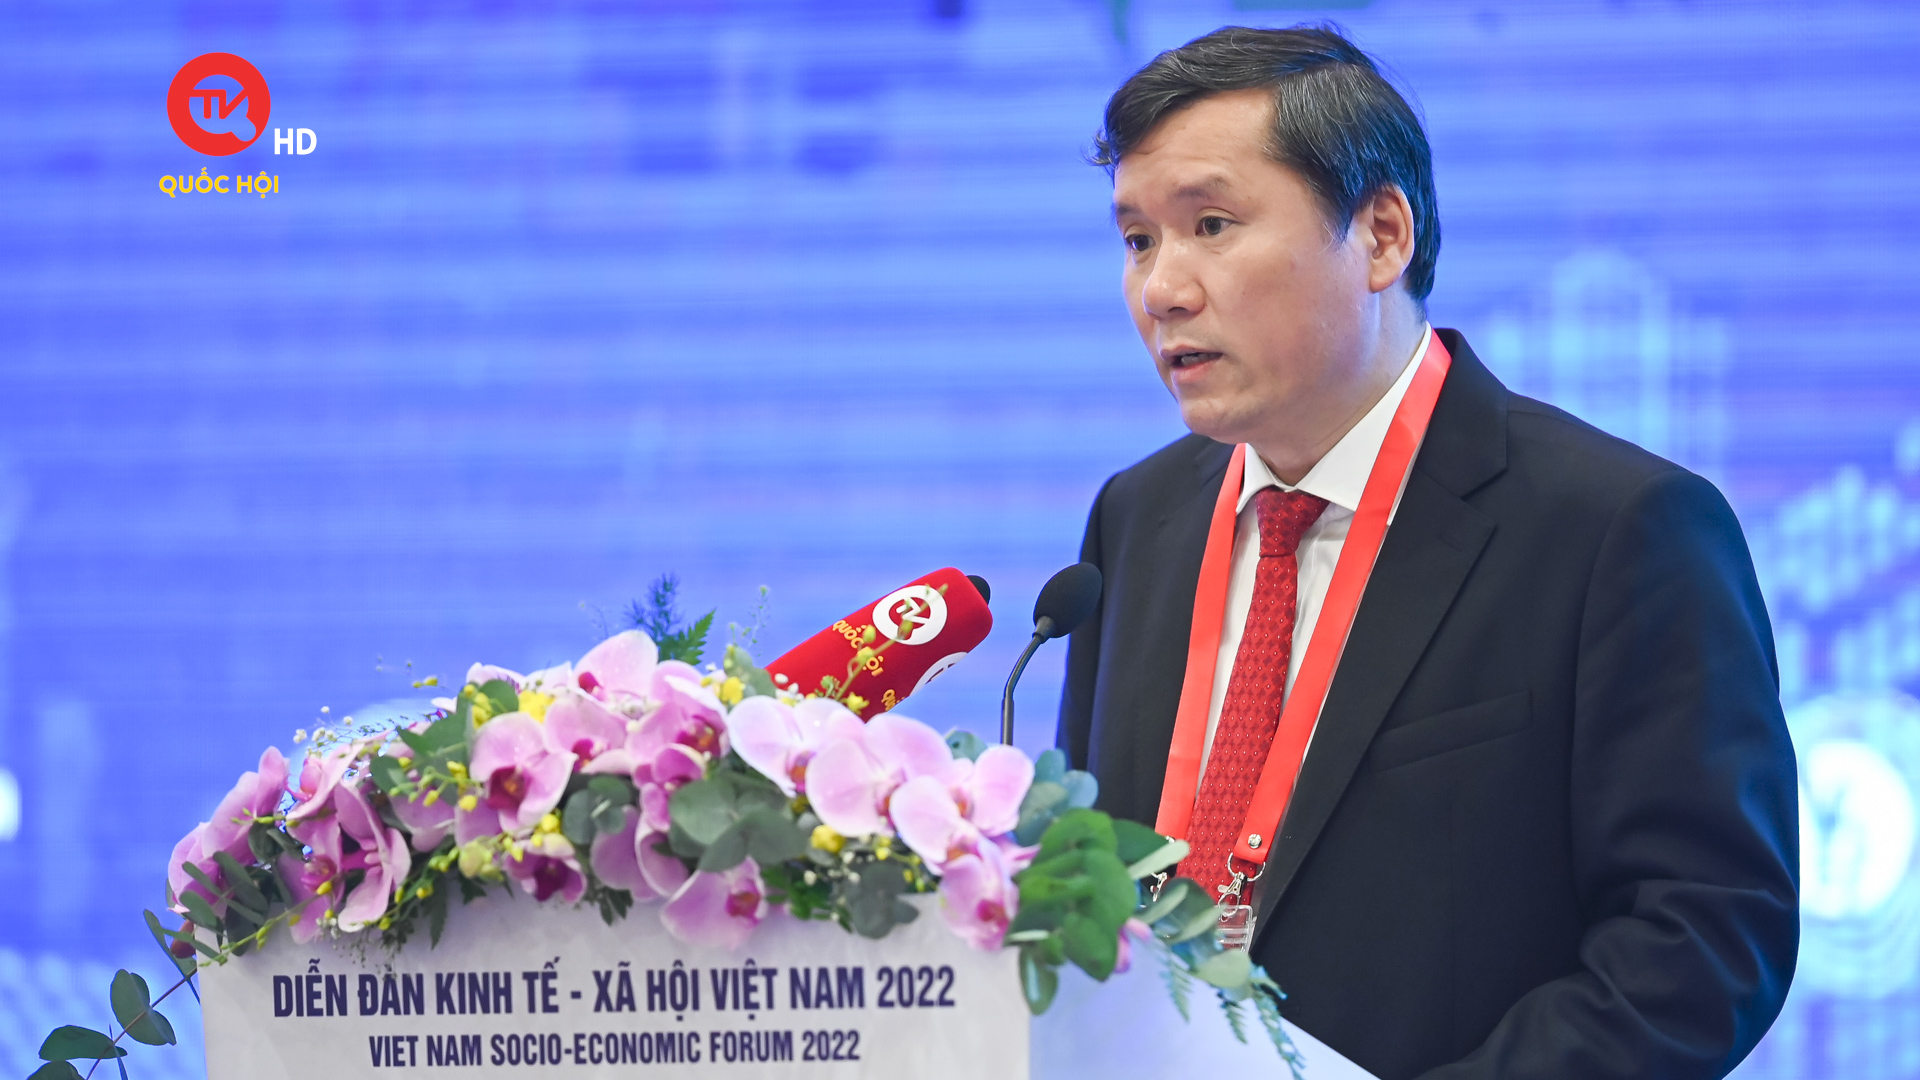 Phó Giám đốc Học viện Quốc gia Hồ Chí Minh: Định vị điểm nghẽn, kiến nghị nhiều giải pháp hỗ trợ DN, NLĐ